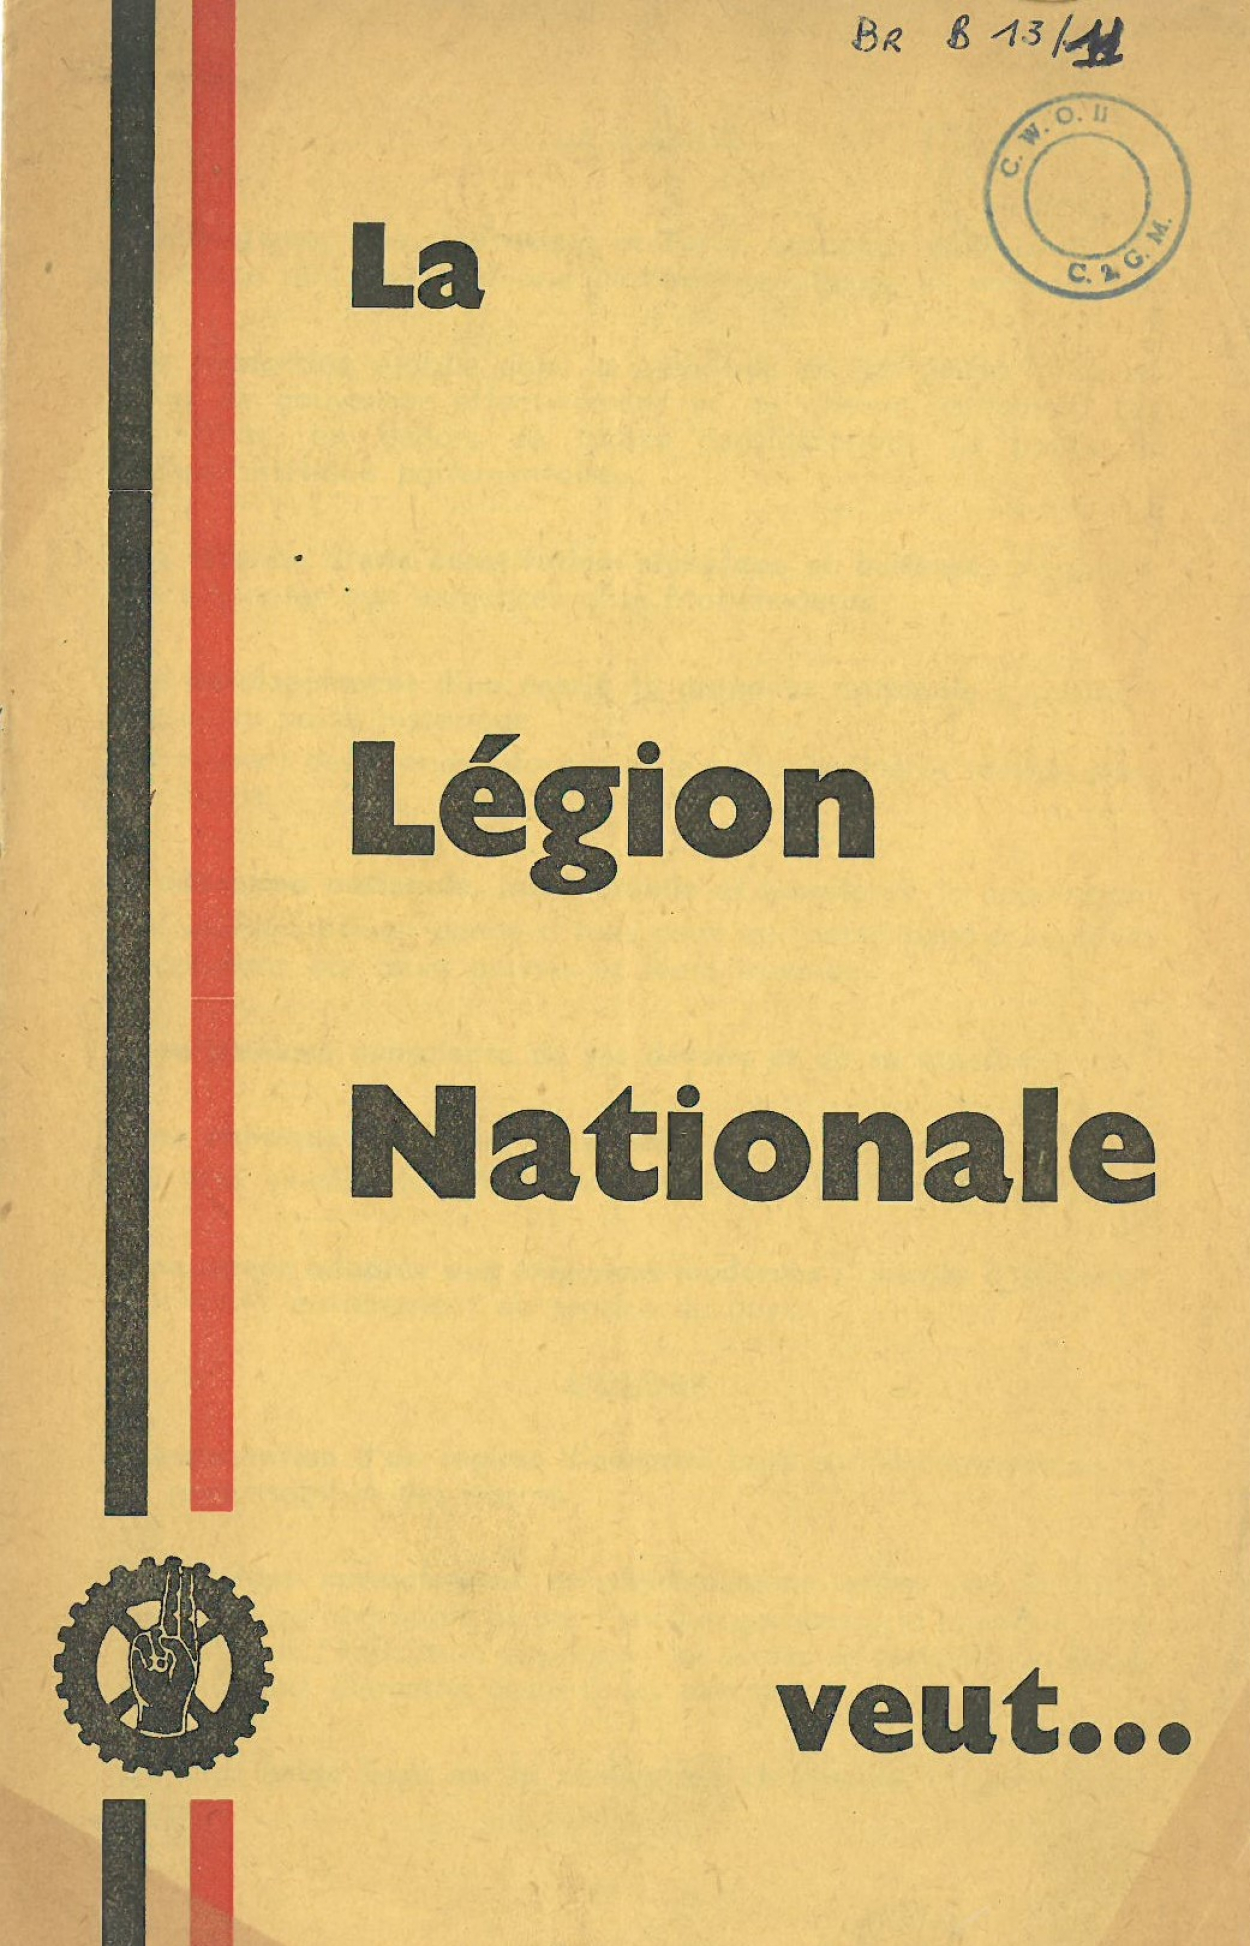 brochure-la-lAgion-nationale.jpg